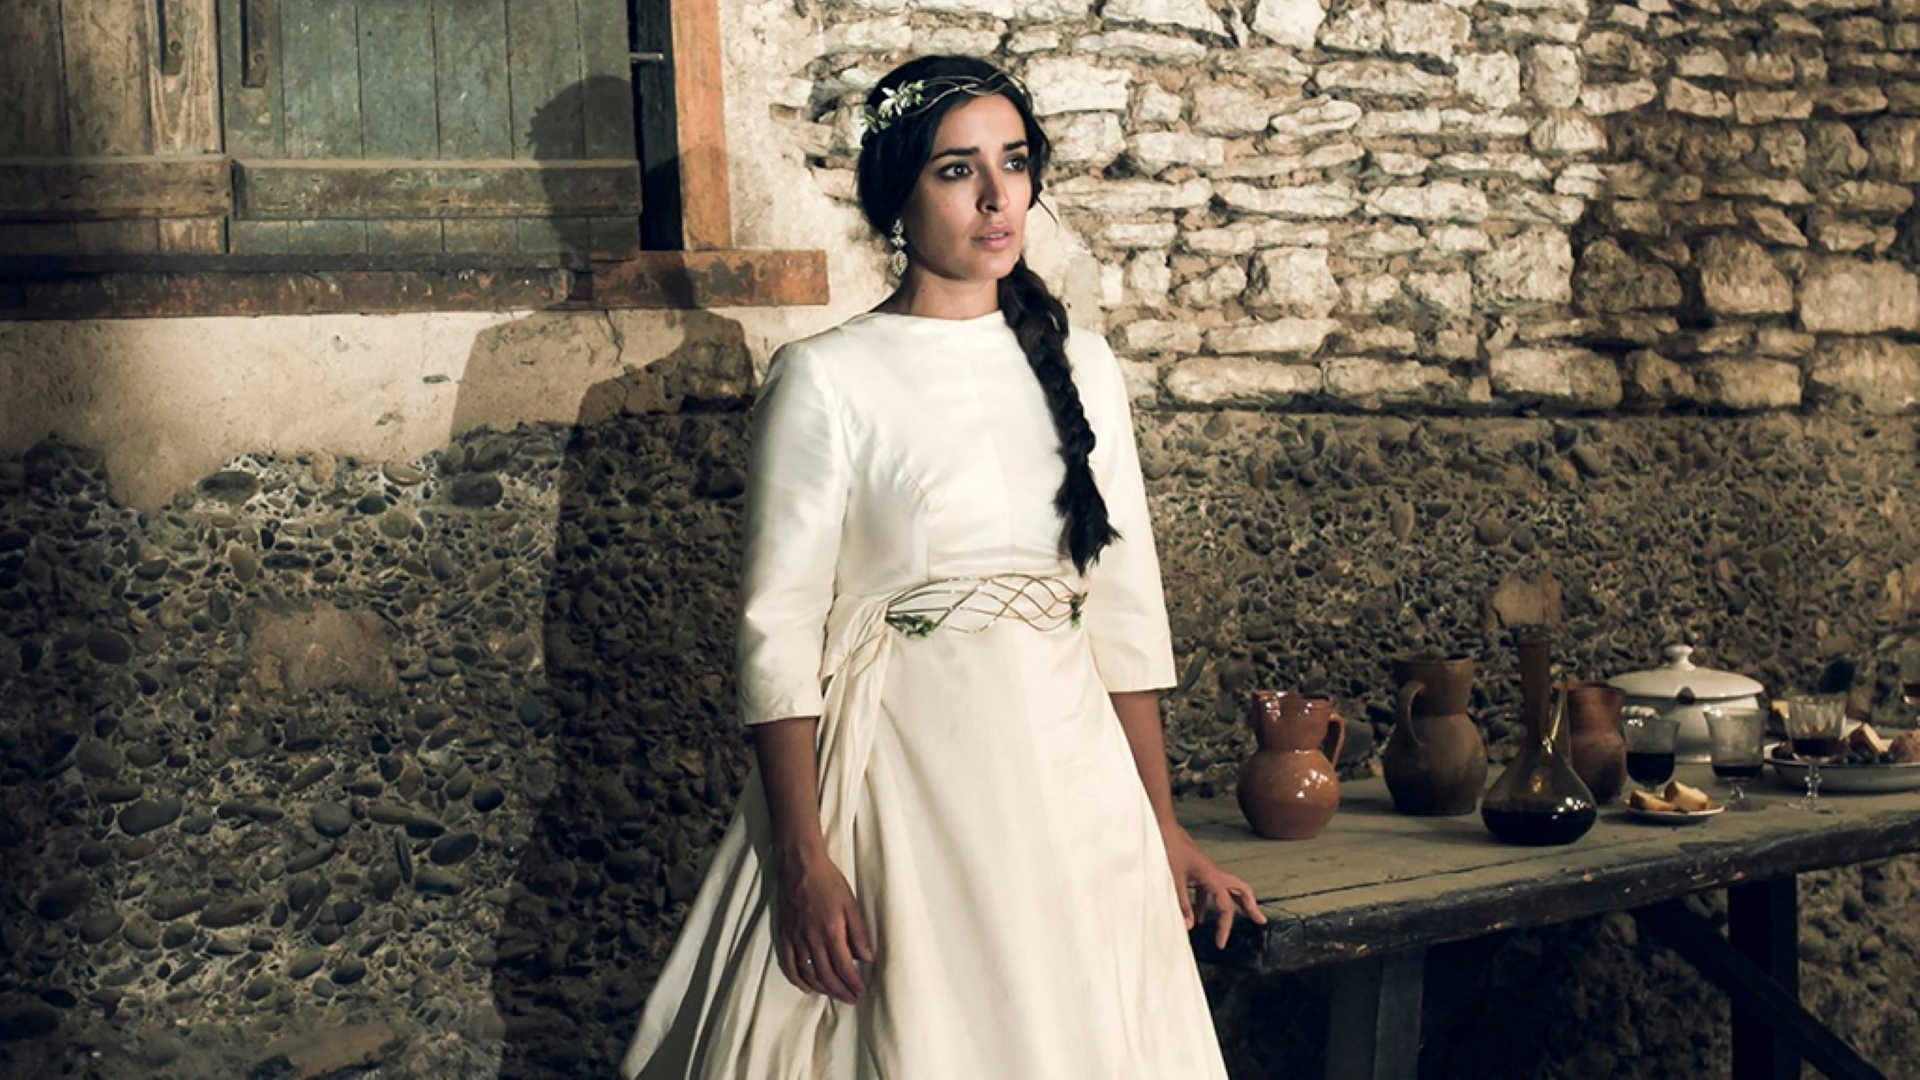 La novia: Cine español online, en Somos Cine 